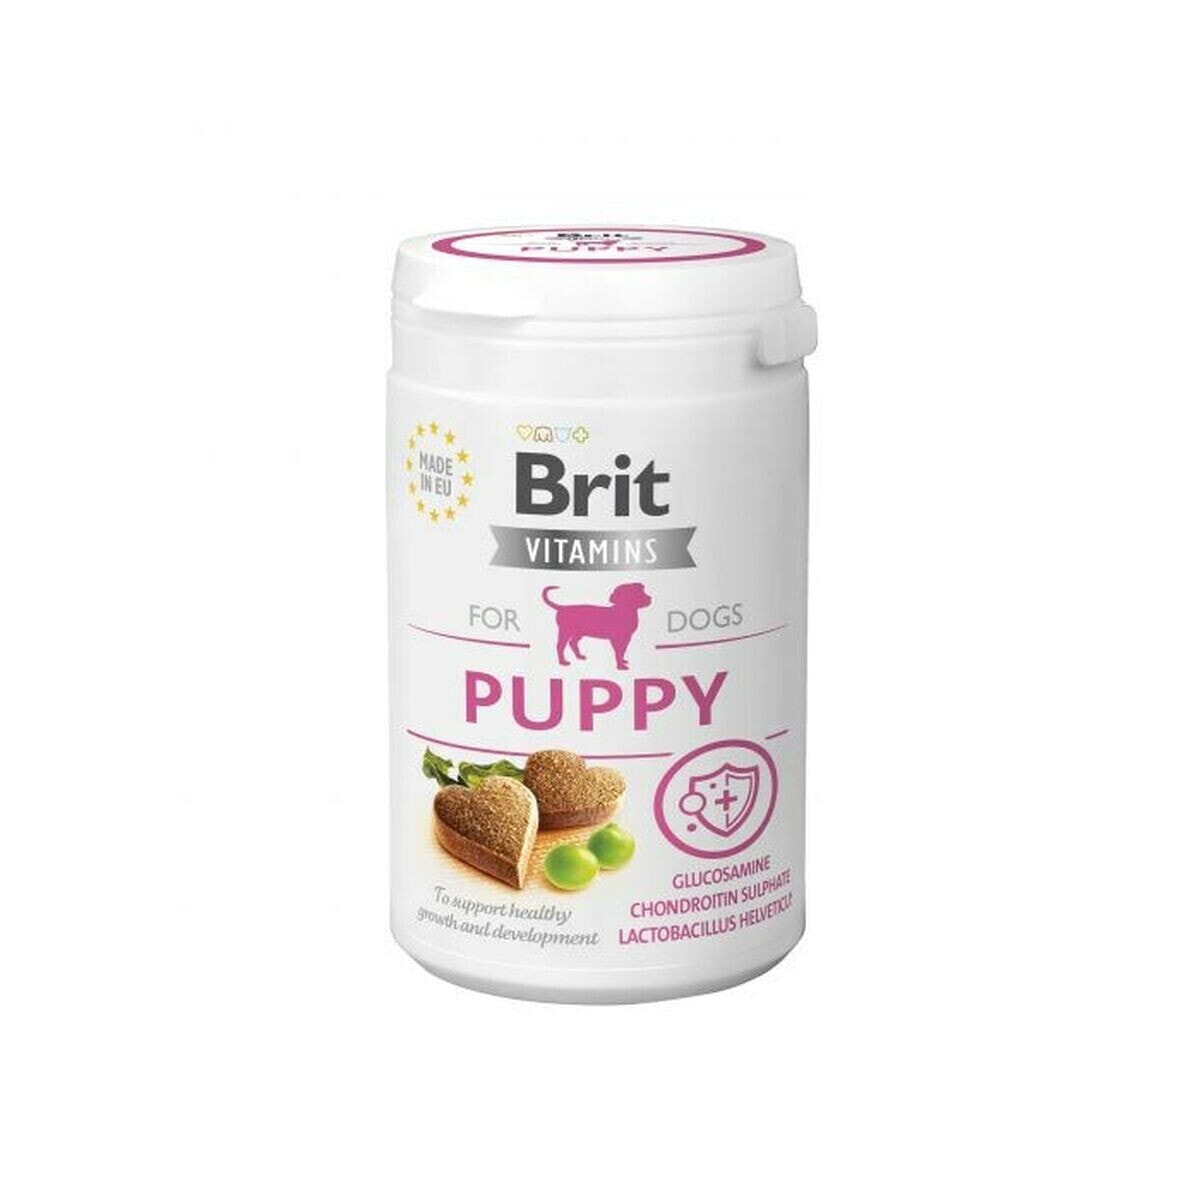 Пищевая добавка Brit Puppy 150 g